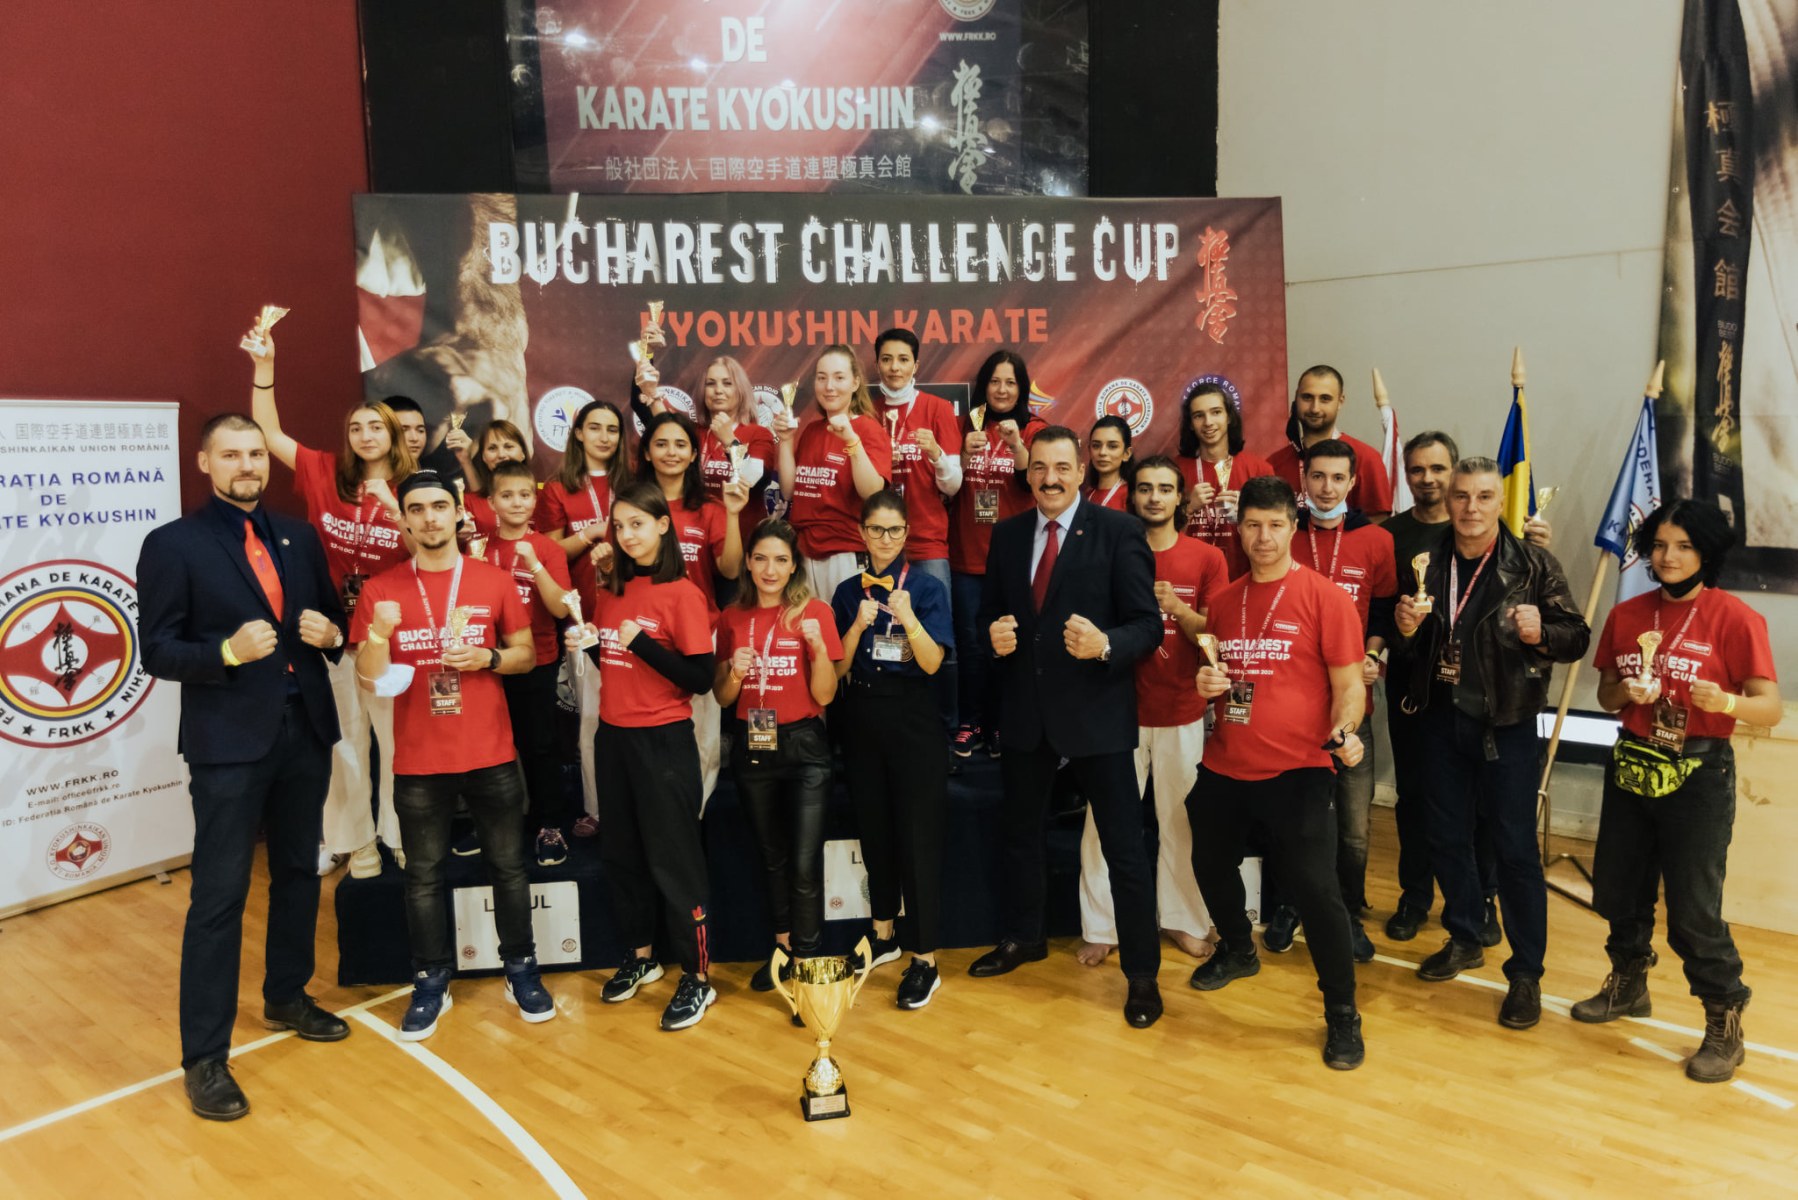 2021.10.23 – BUCHAREST CHALLENGE INTERNATIONAL CUP